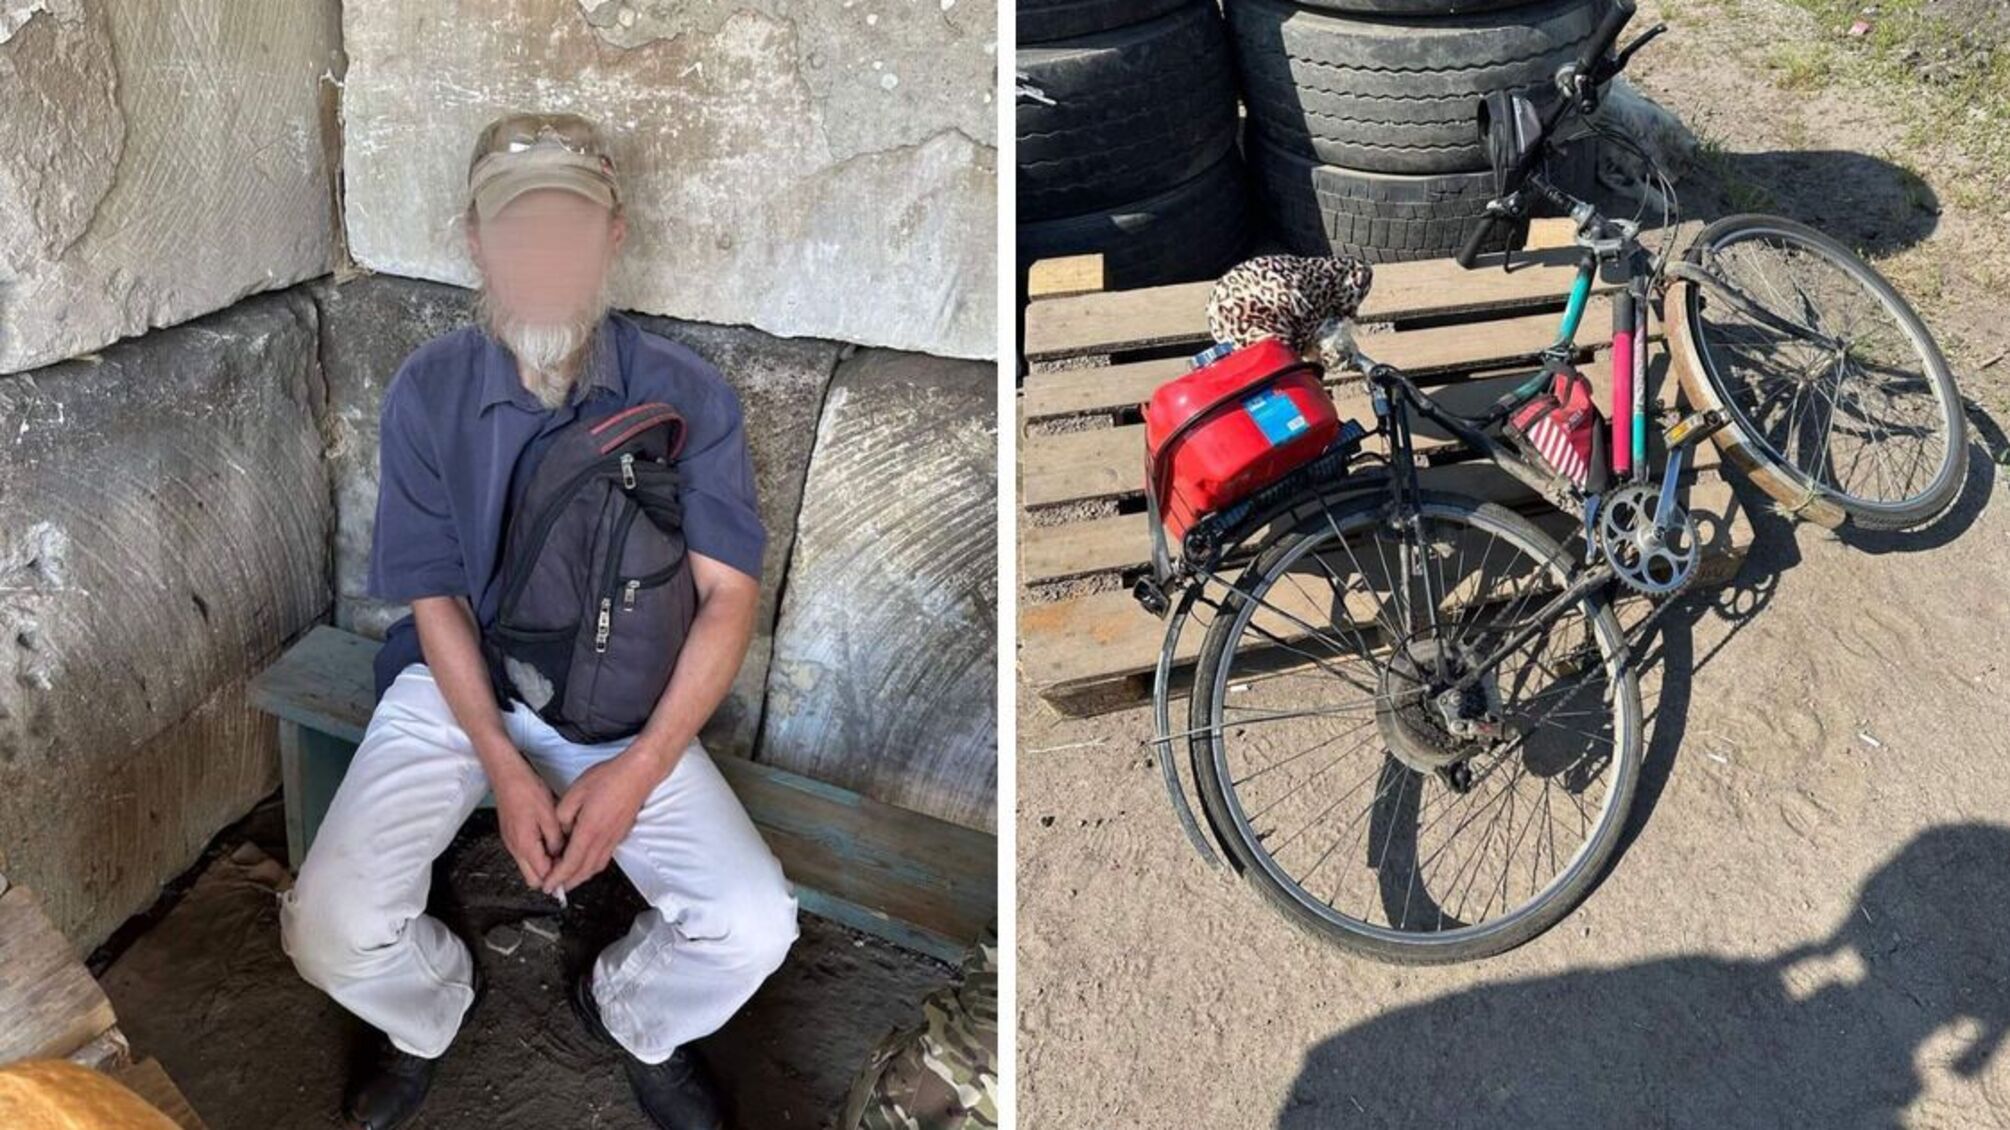 'Агент на колесах': на Херсонщине пограничники поймали велосипедиста, который 'сливал' рф позиции ВСУ